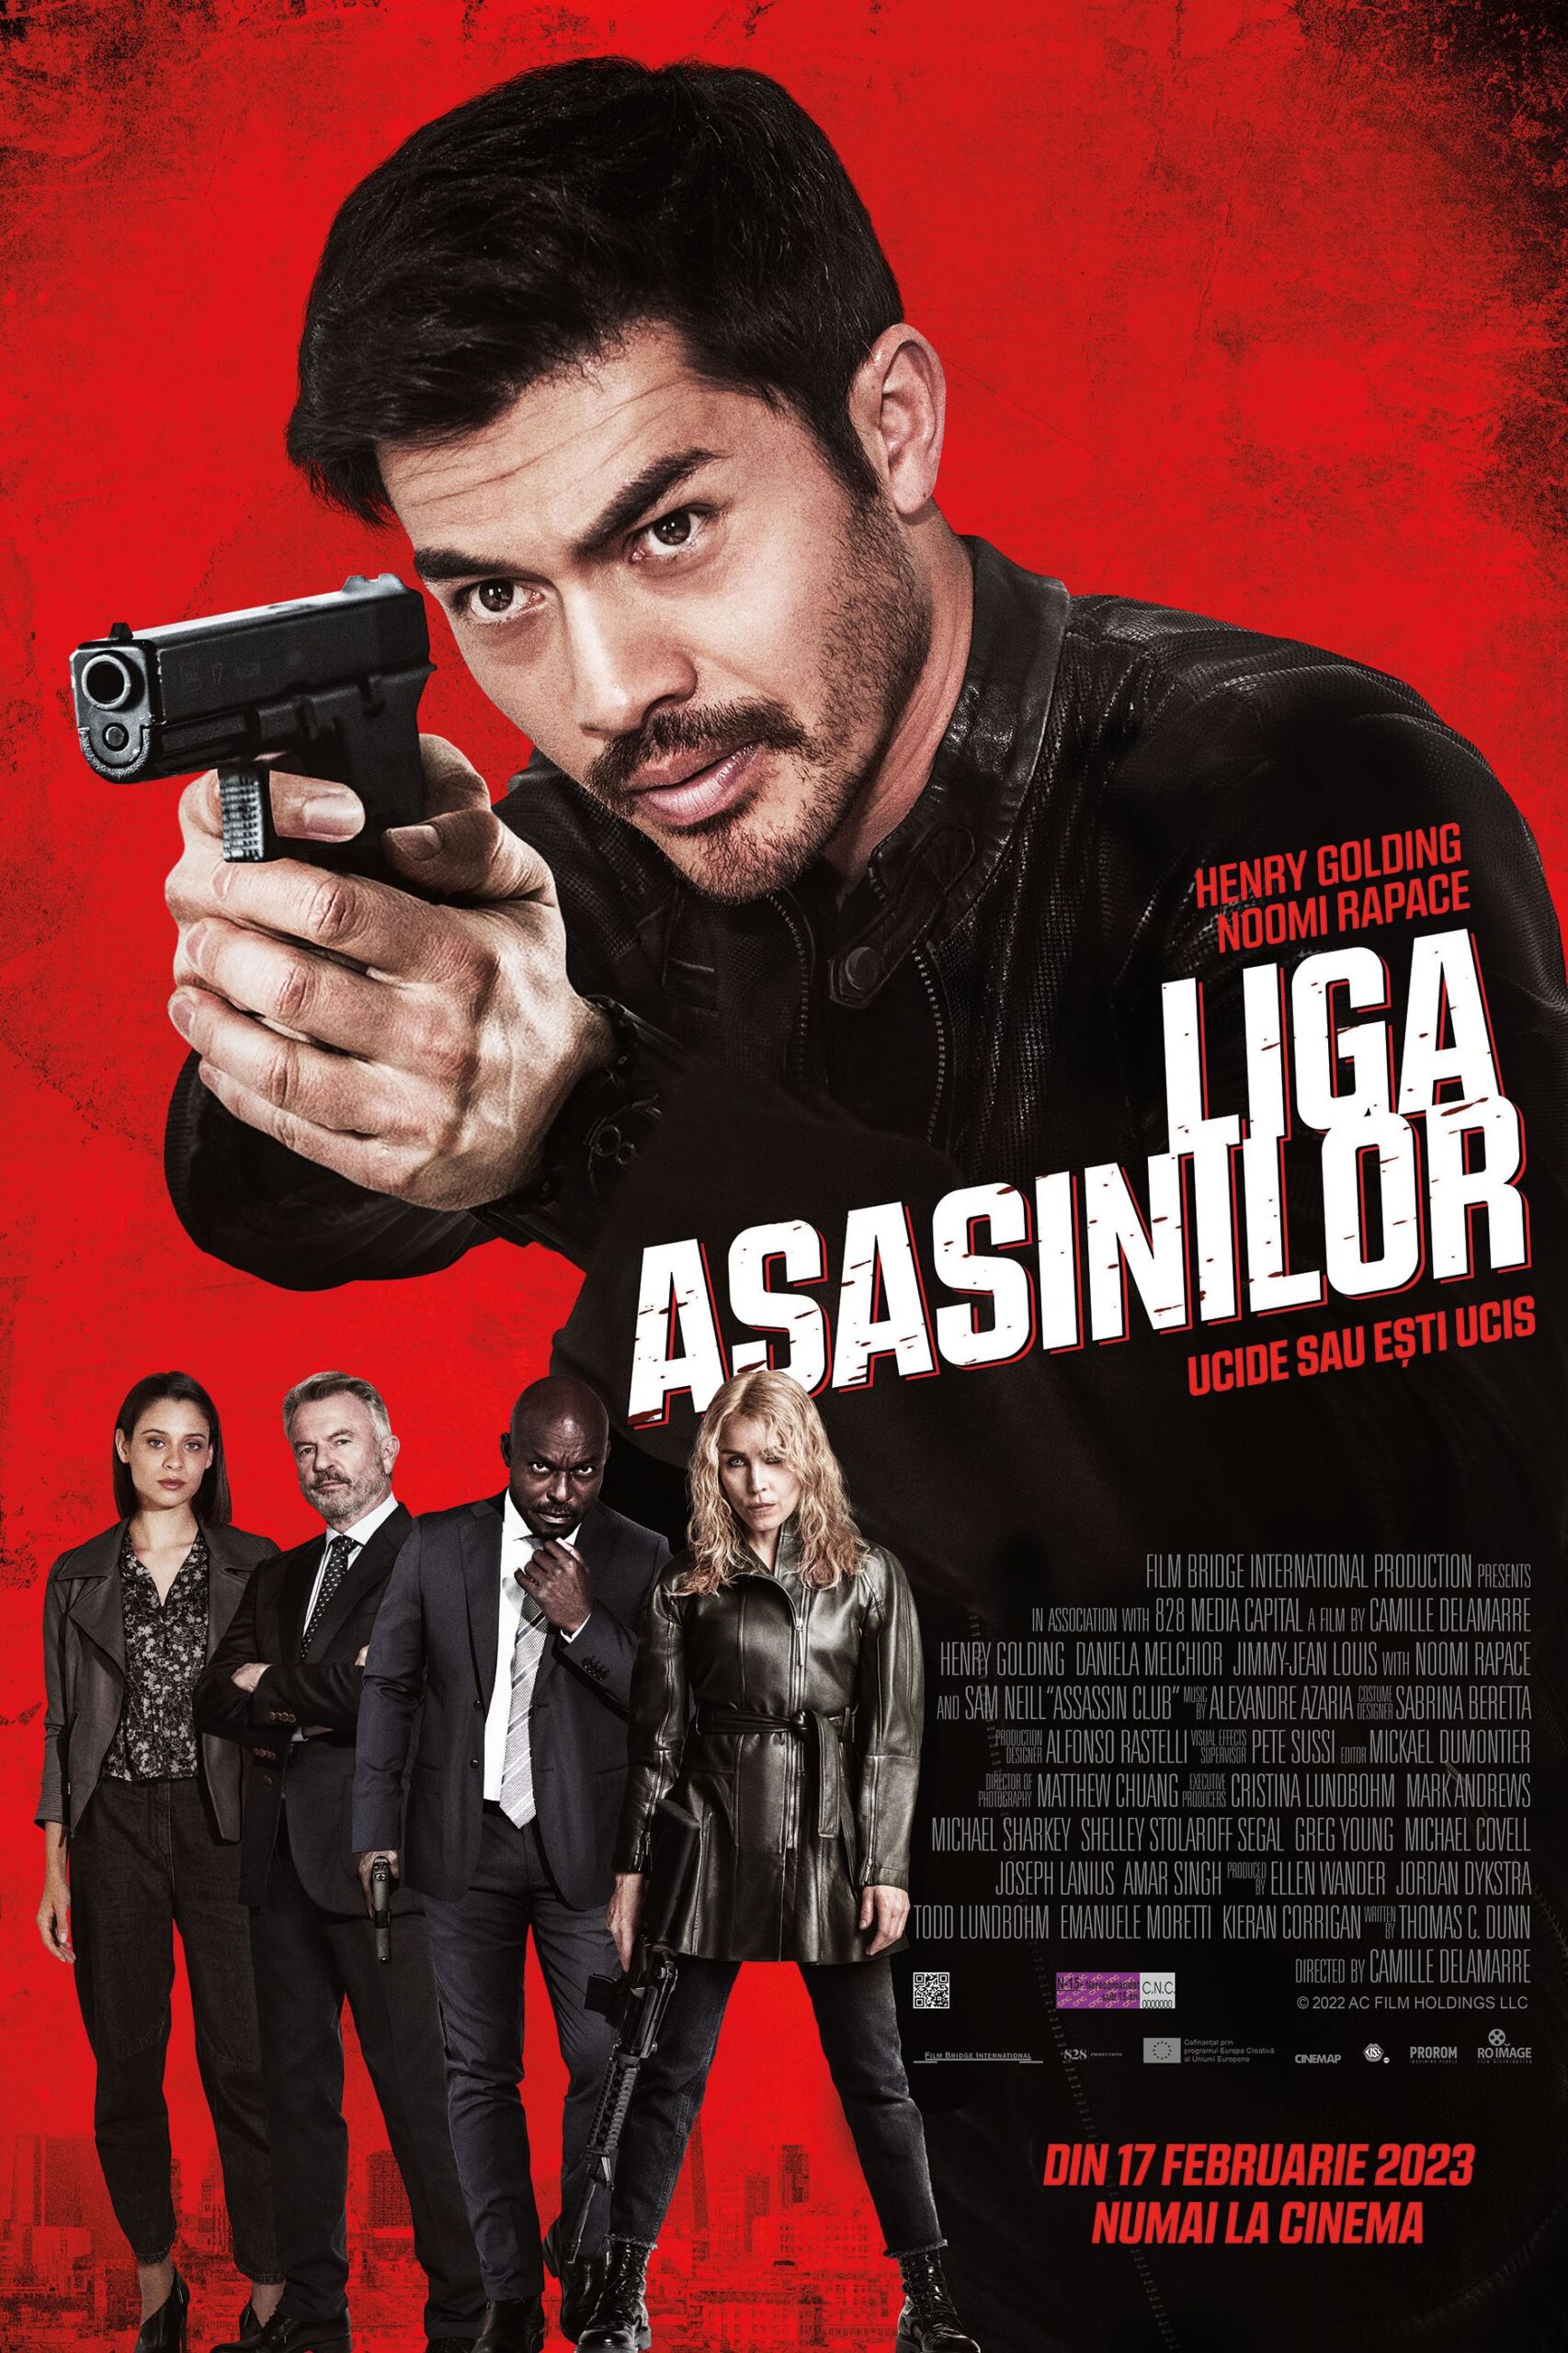 Liga asasinilor - Assassin Club POSTER ROMANIA